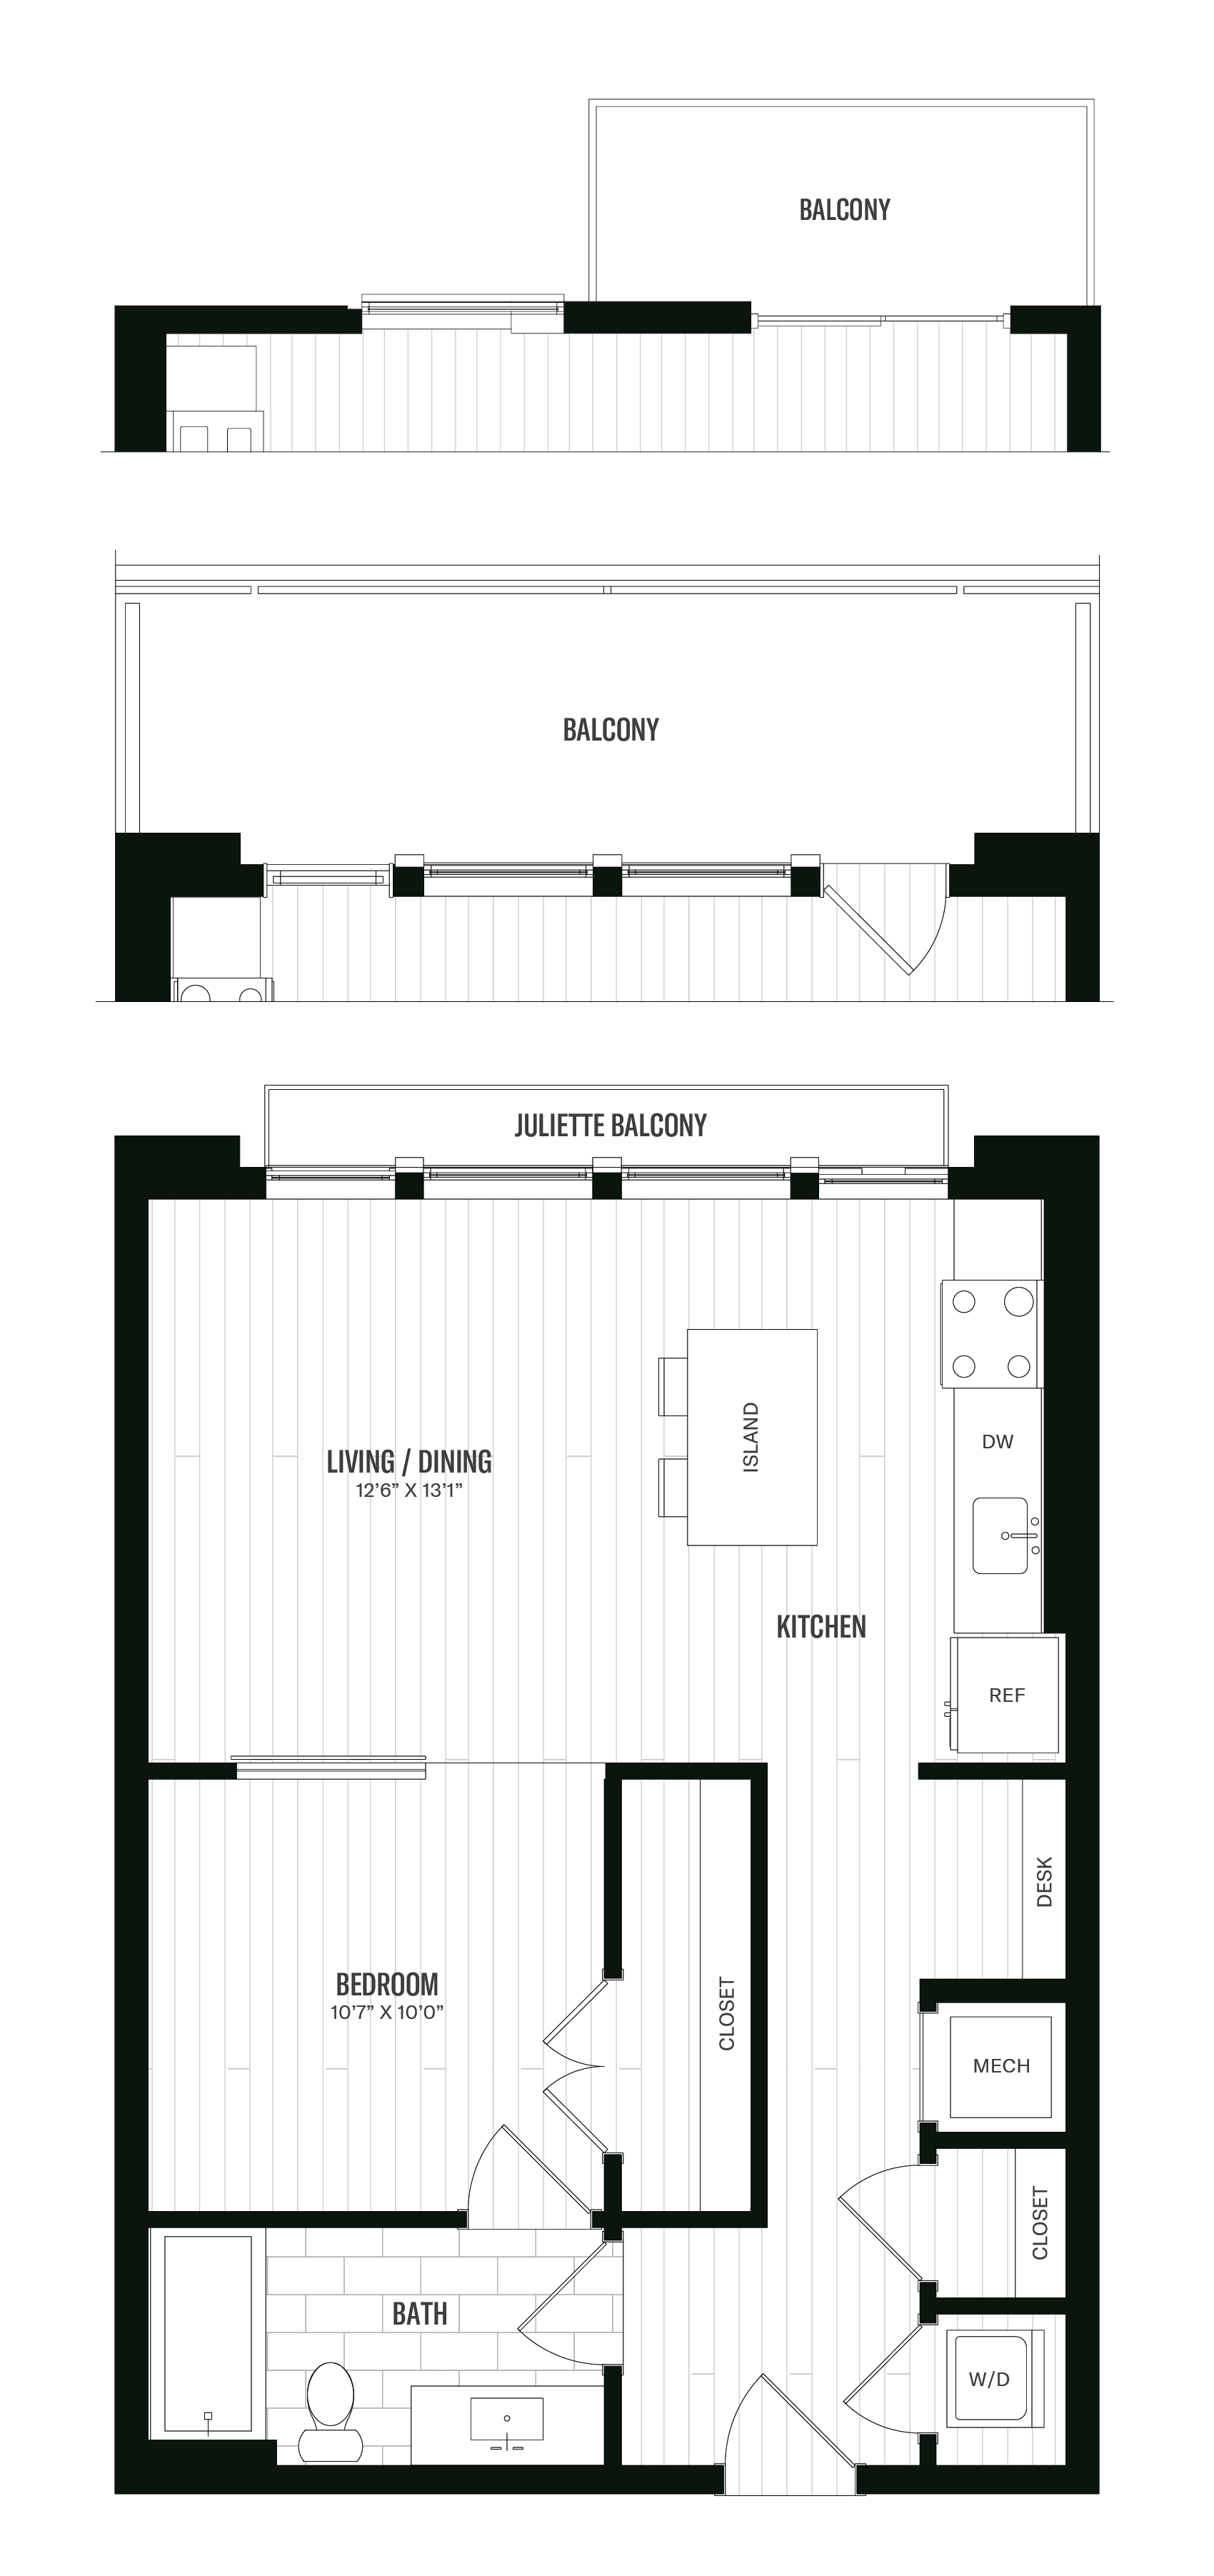 Floorplan image of unit 412